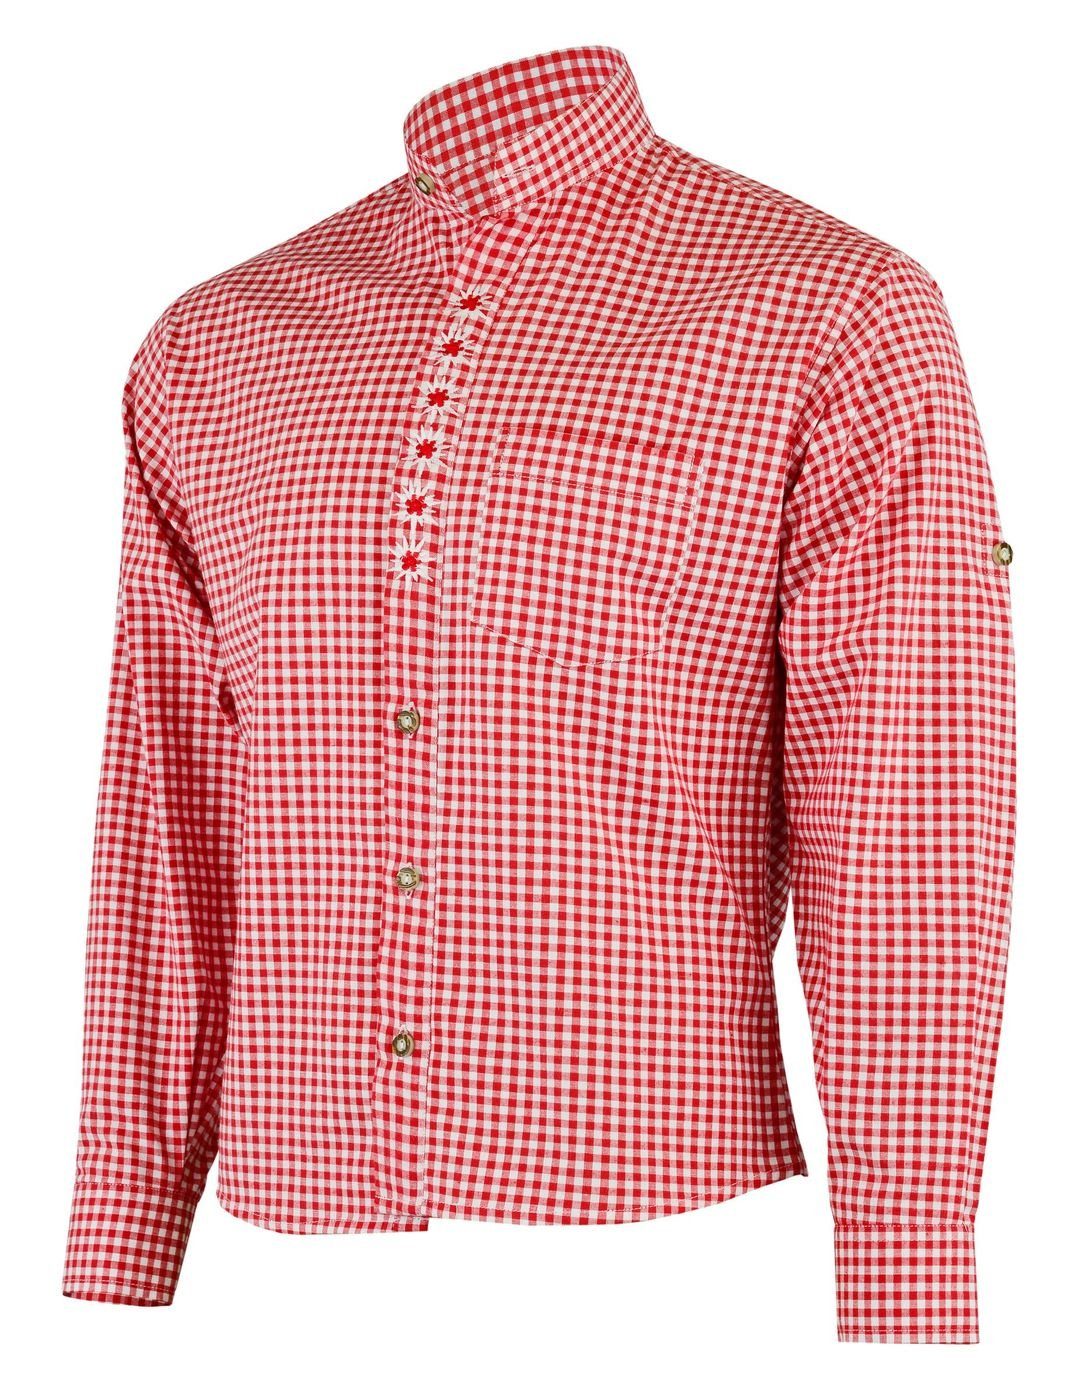 Trachtenlederhose German Trachtenhemd GW1203-EW-SK Edelweiß-Stickerei für Rot Trachtenhemd mit stehkragen Wear